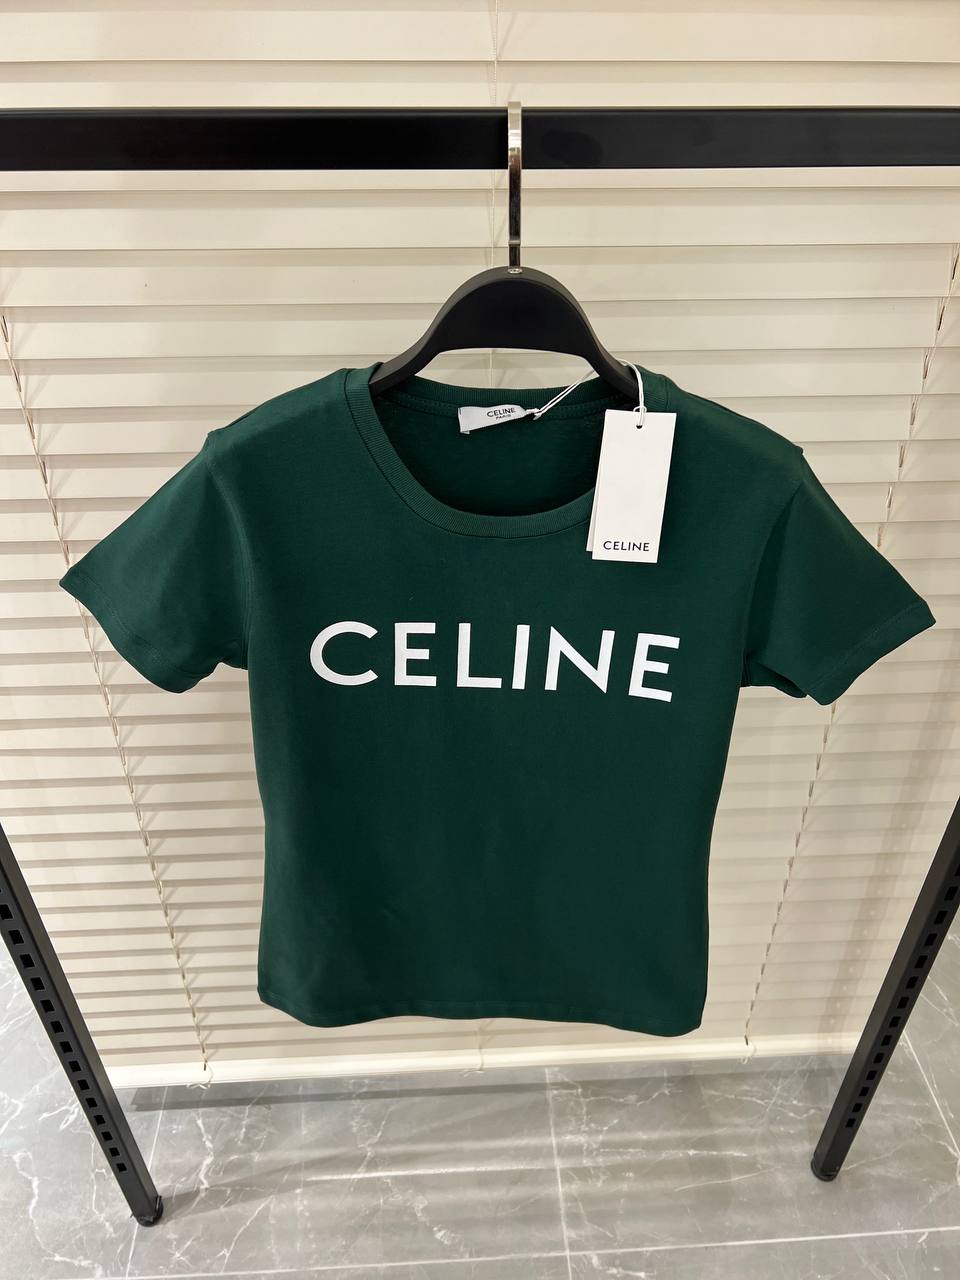 Celine Logo Printed Green Tshirt For Women